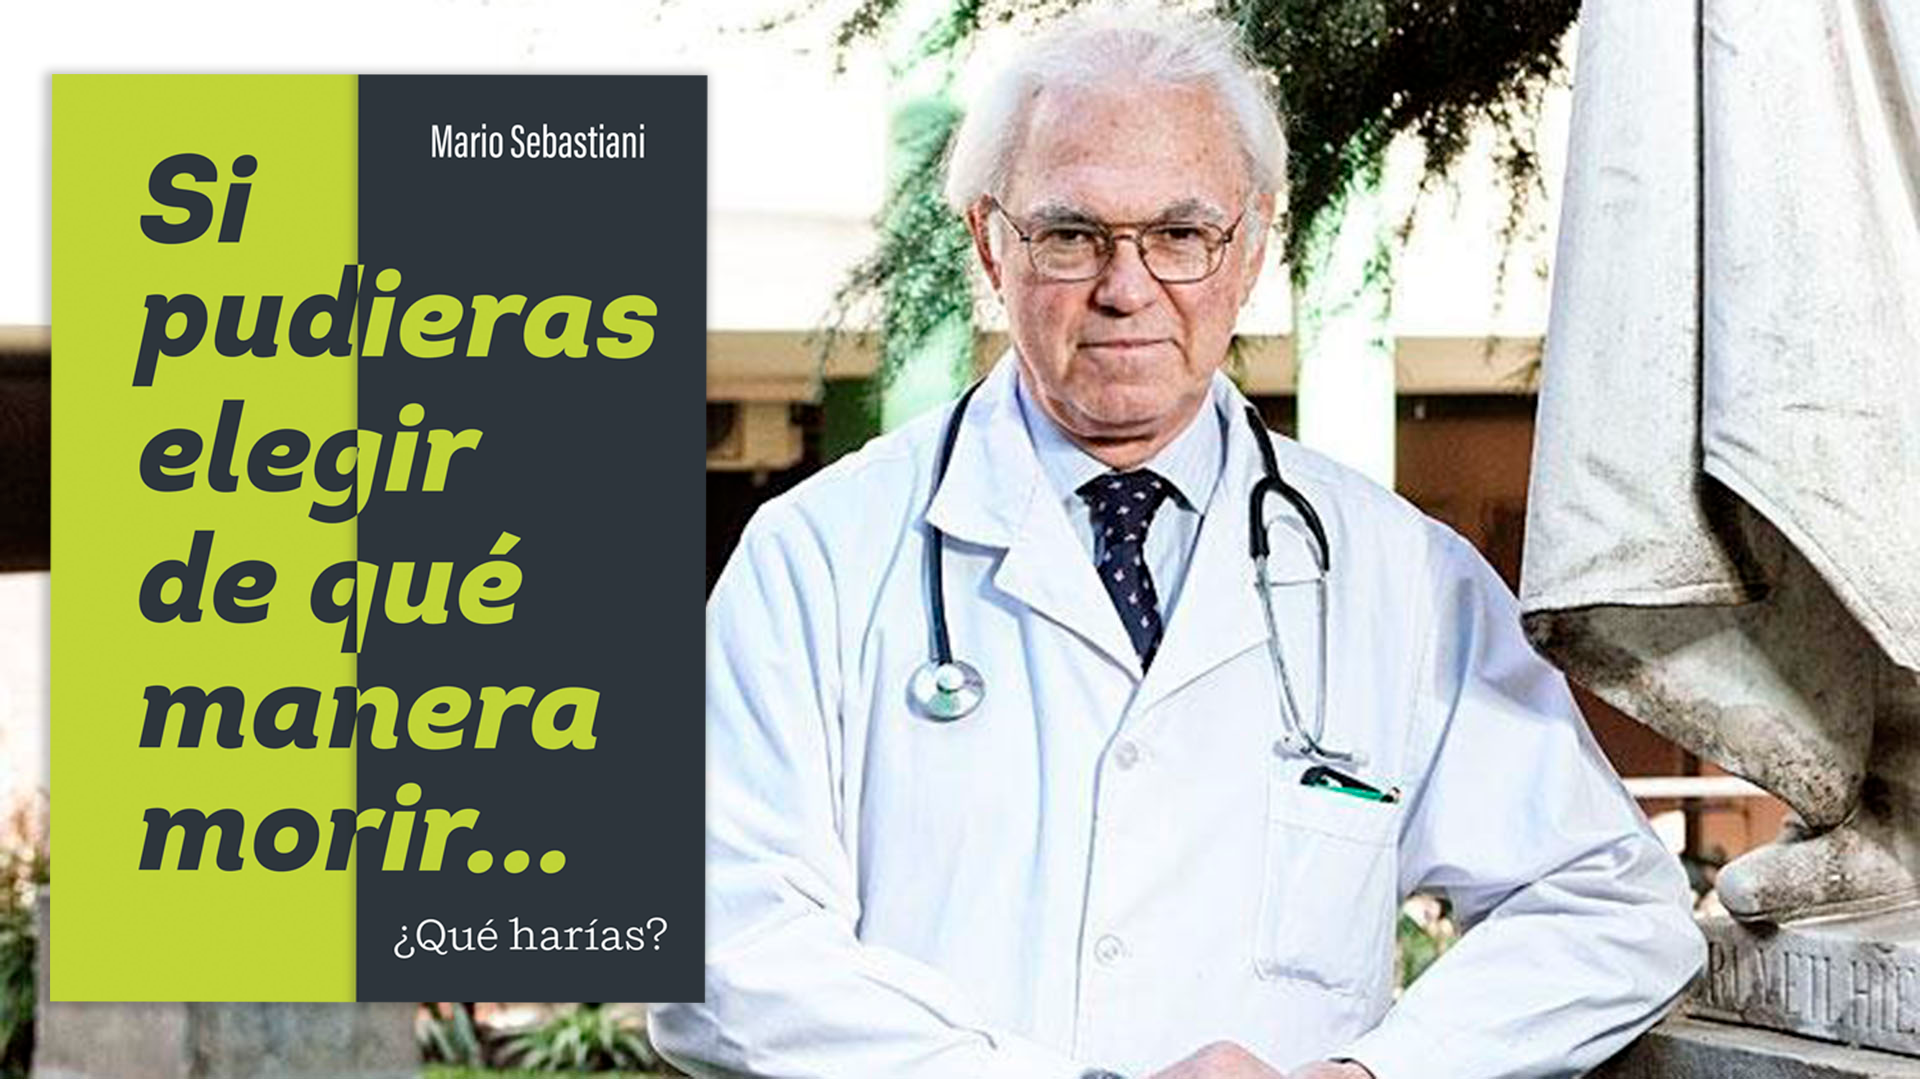 En sus 45 años de carrera, el médico y obstetra argentino Mario Sebastiani ha luchado por el derecho a decidir sobre el propio cuerpo. Fue una de las voces que defendió el aborto hasta su legalización en Argentina, y ahora aboga por el derecho a la eutanasia.